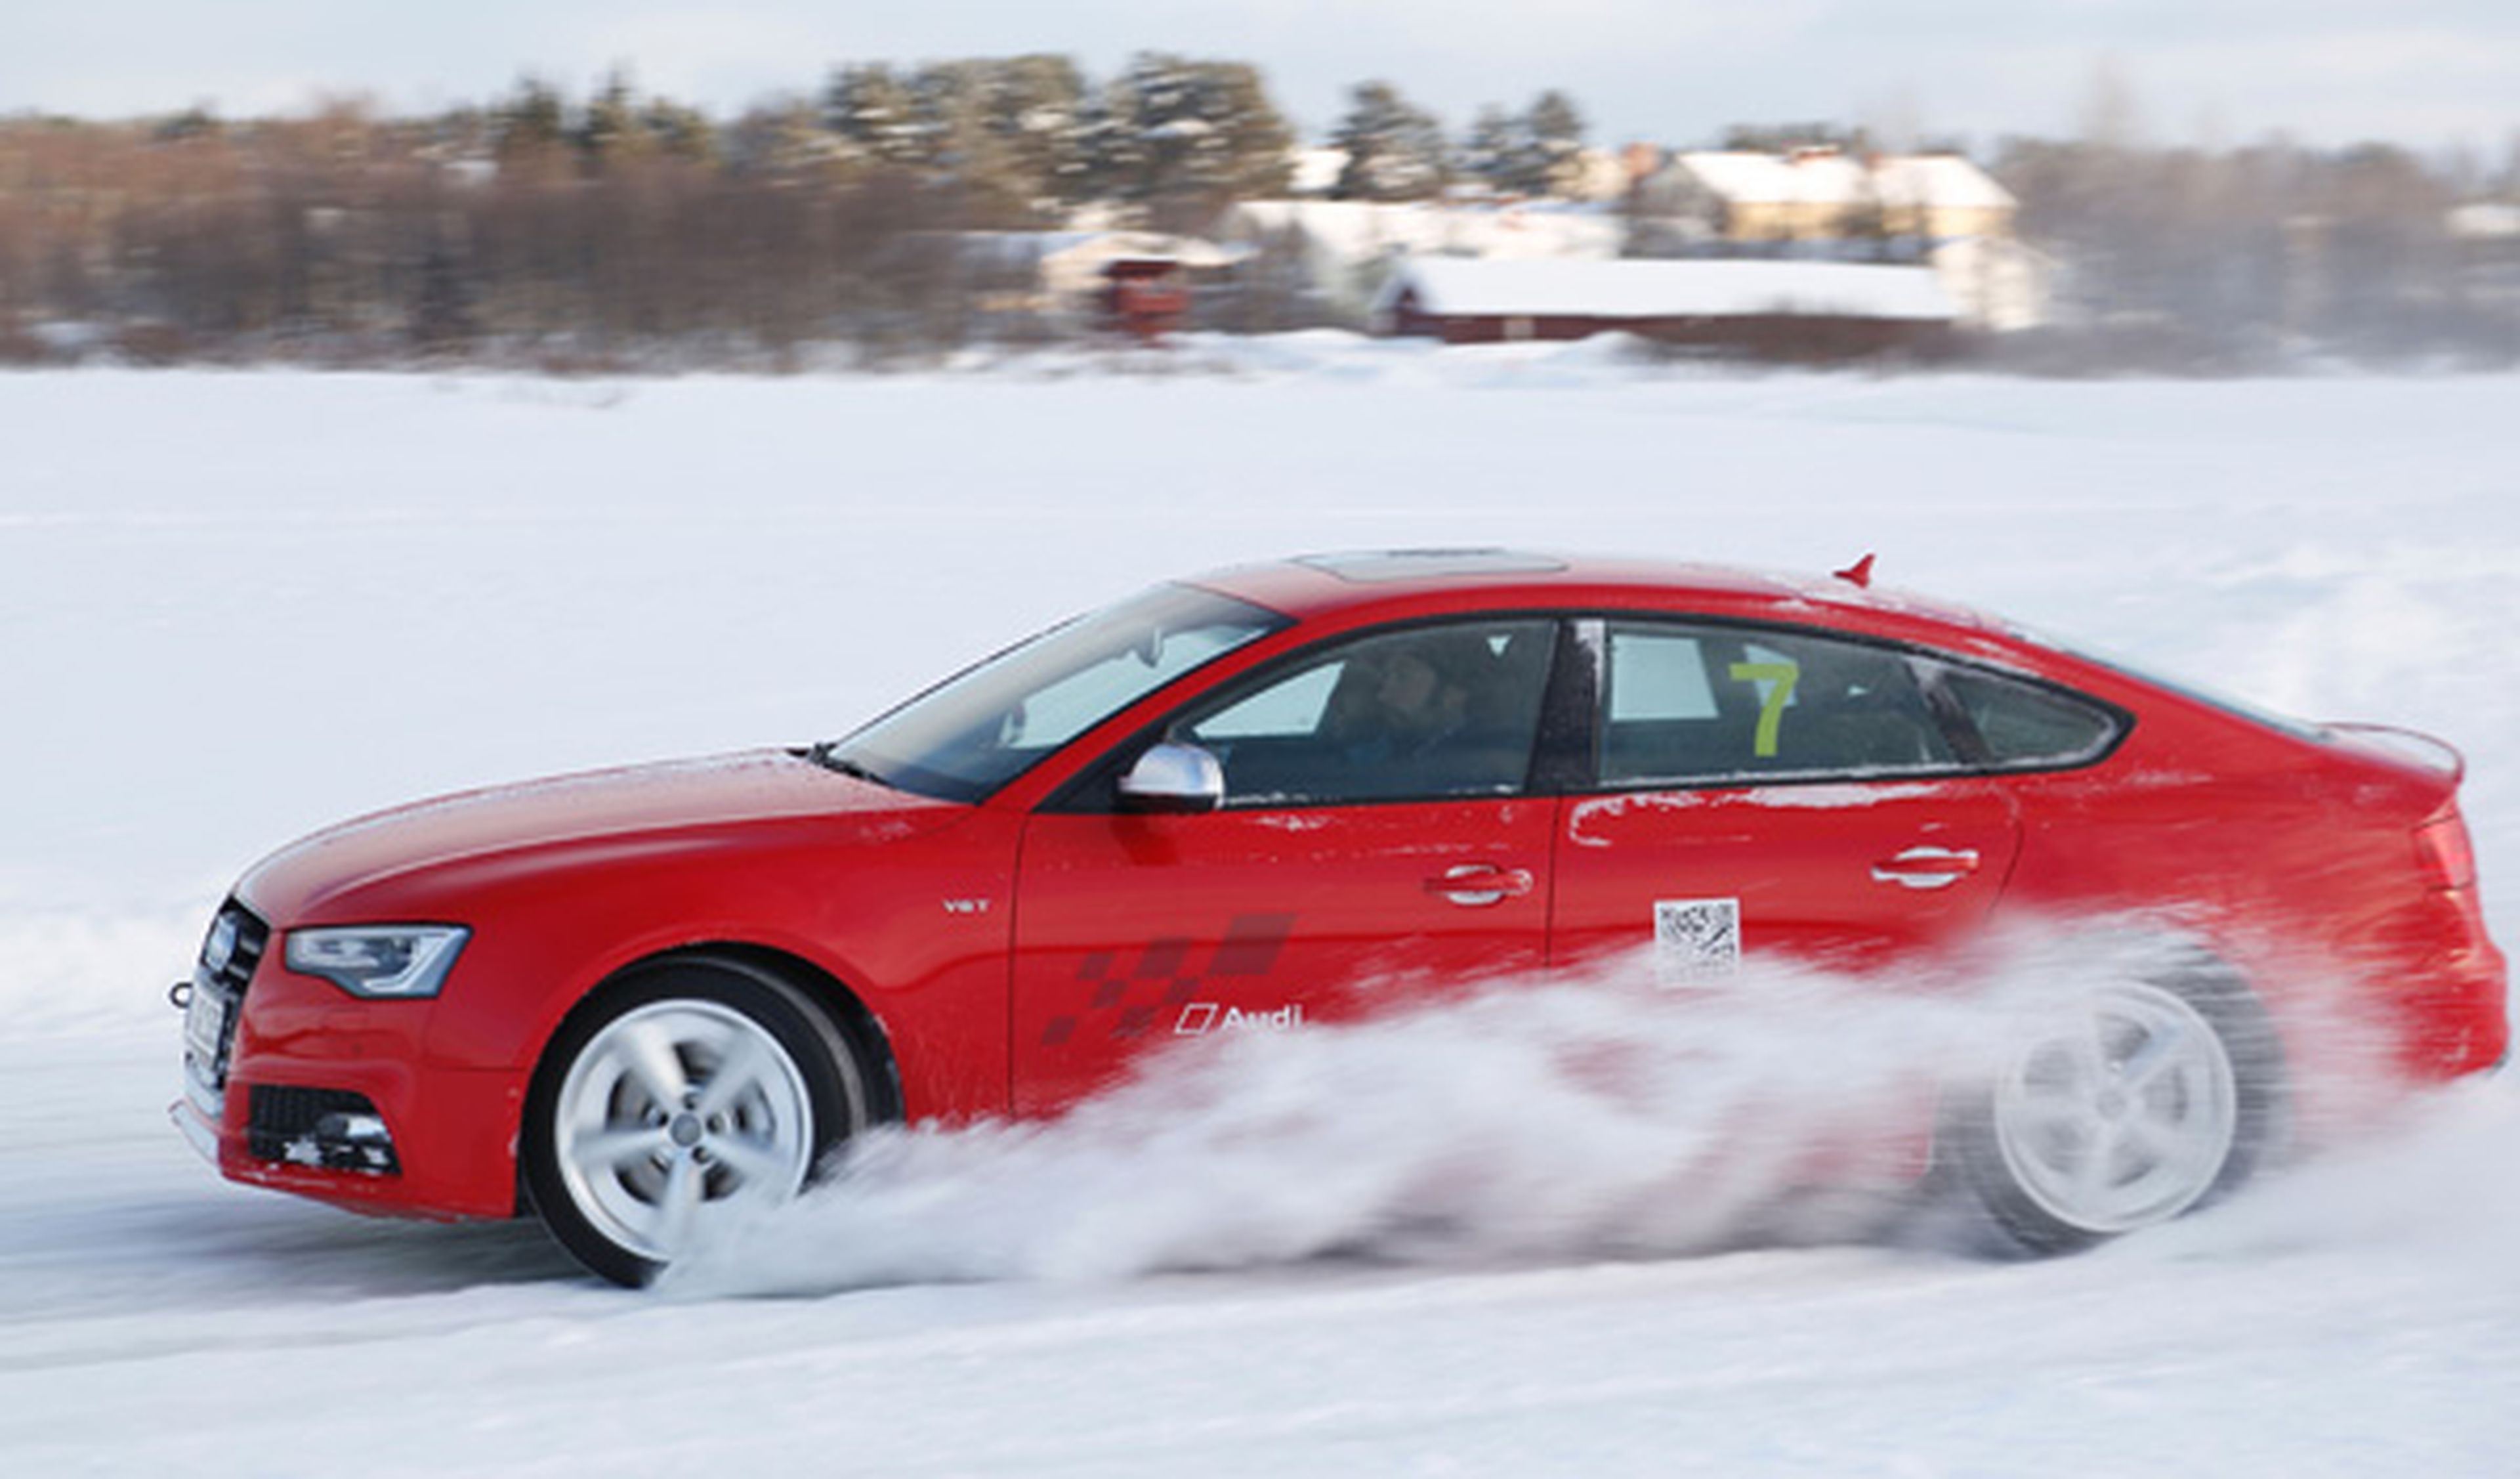 Cursos de conducción en nieve de Audi en Baqueira/Beret